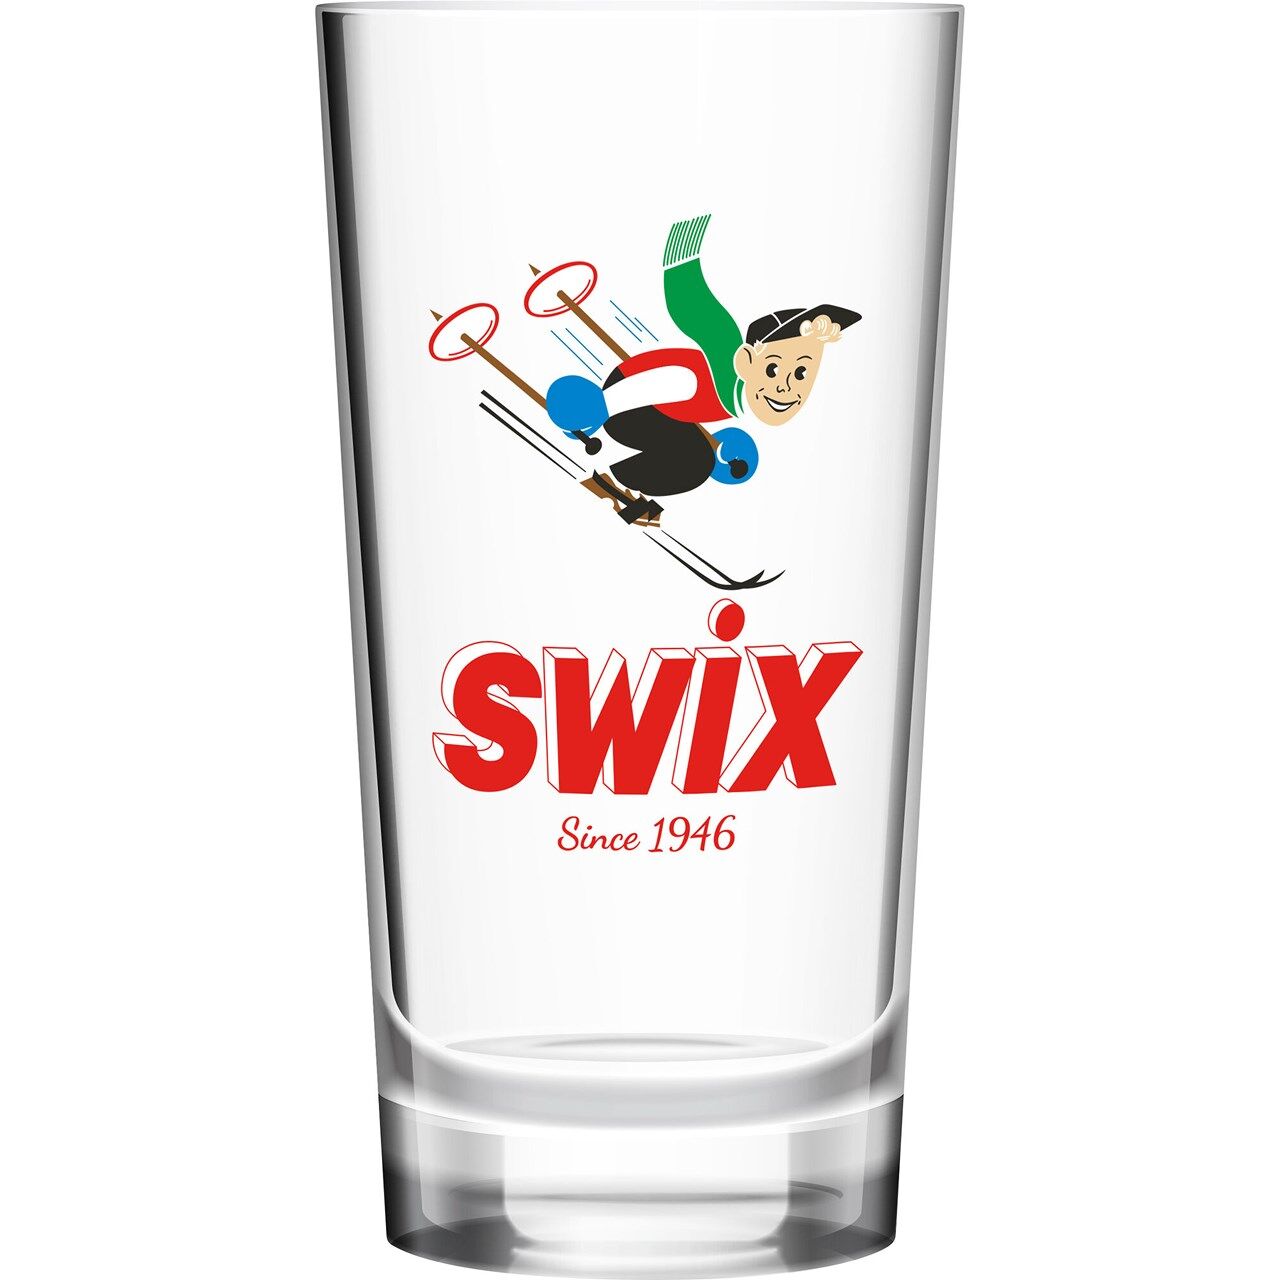 Swix Glass 0,4l R0166 2020